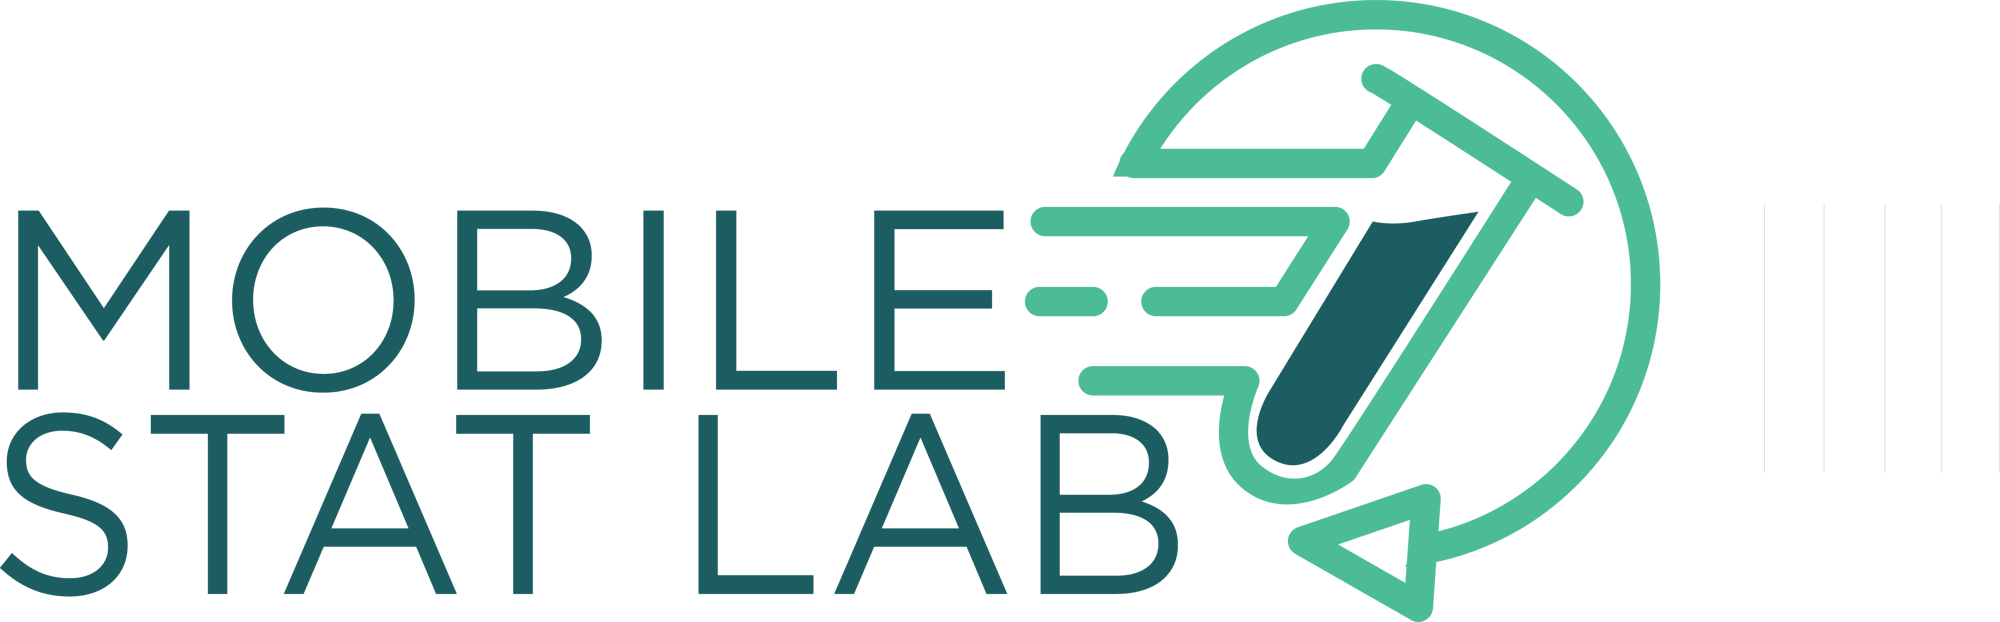 MobileStatLab_Logo_color